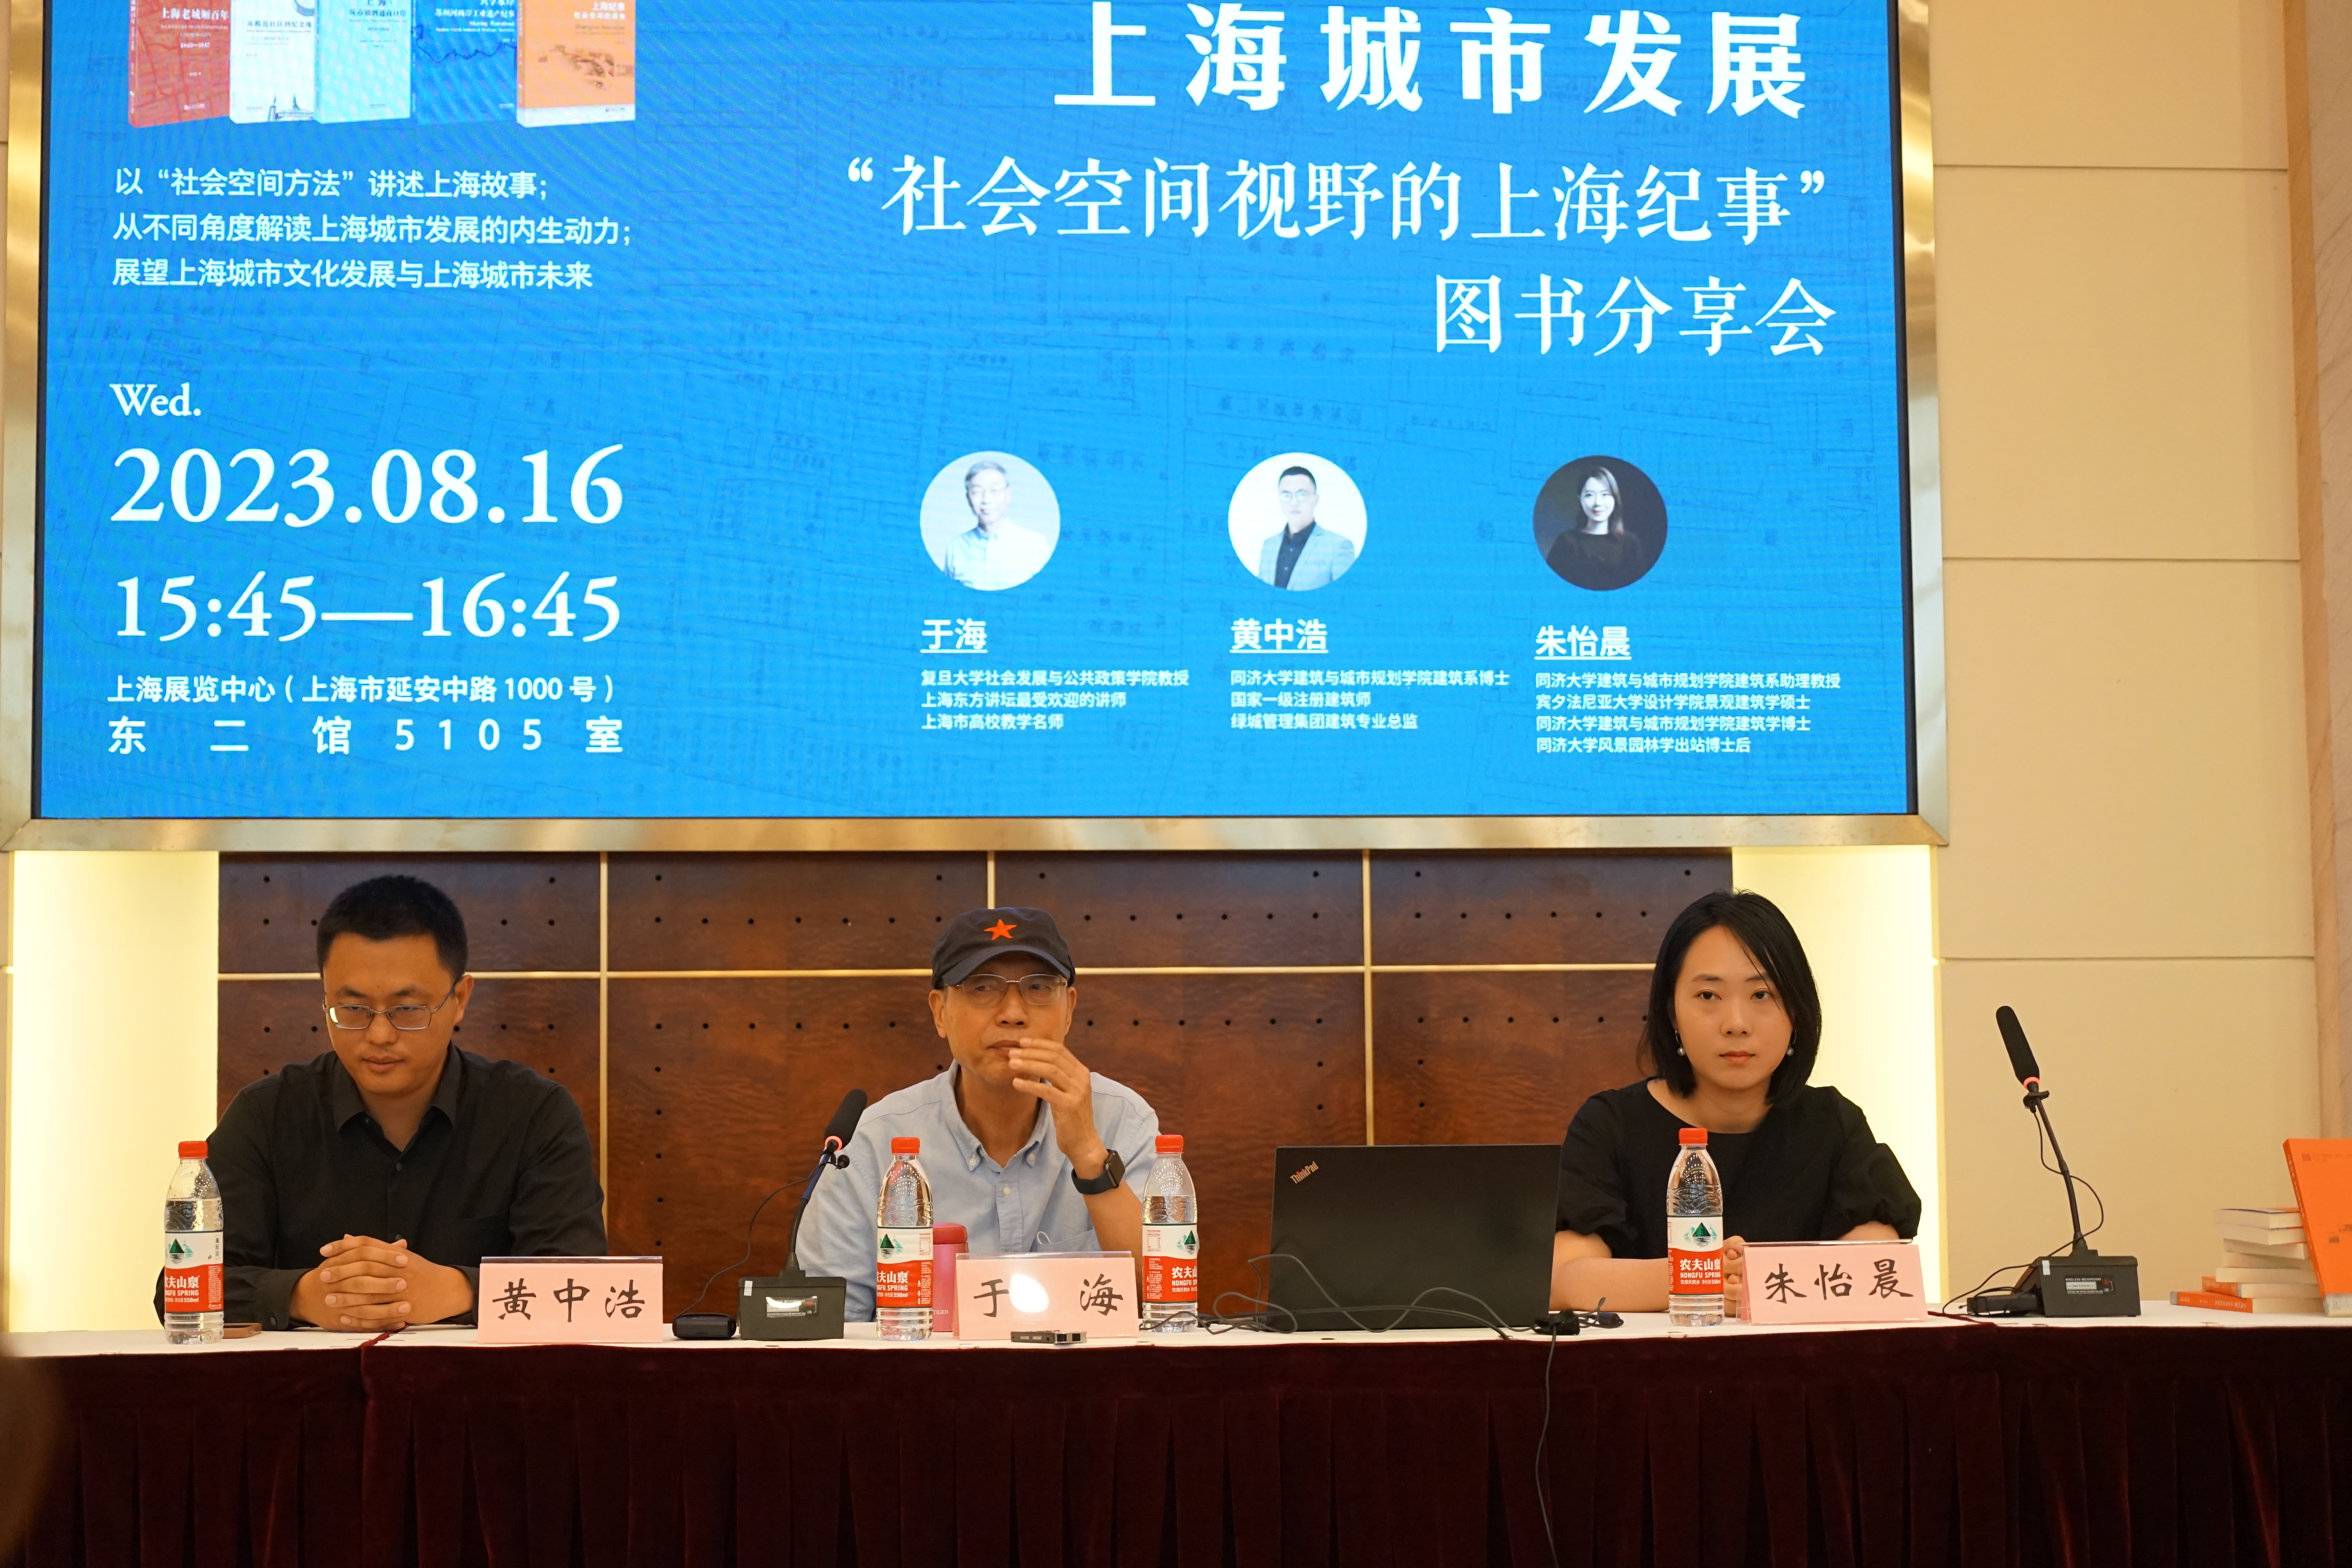 上海书展丨从社会空间视界看上海城市开展，有哪些新发现？